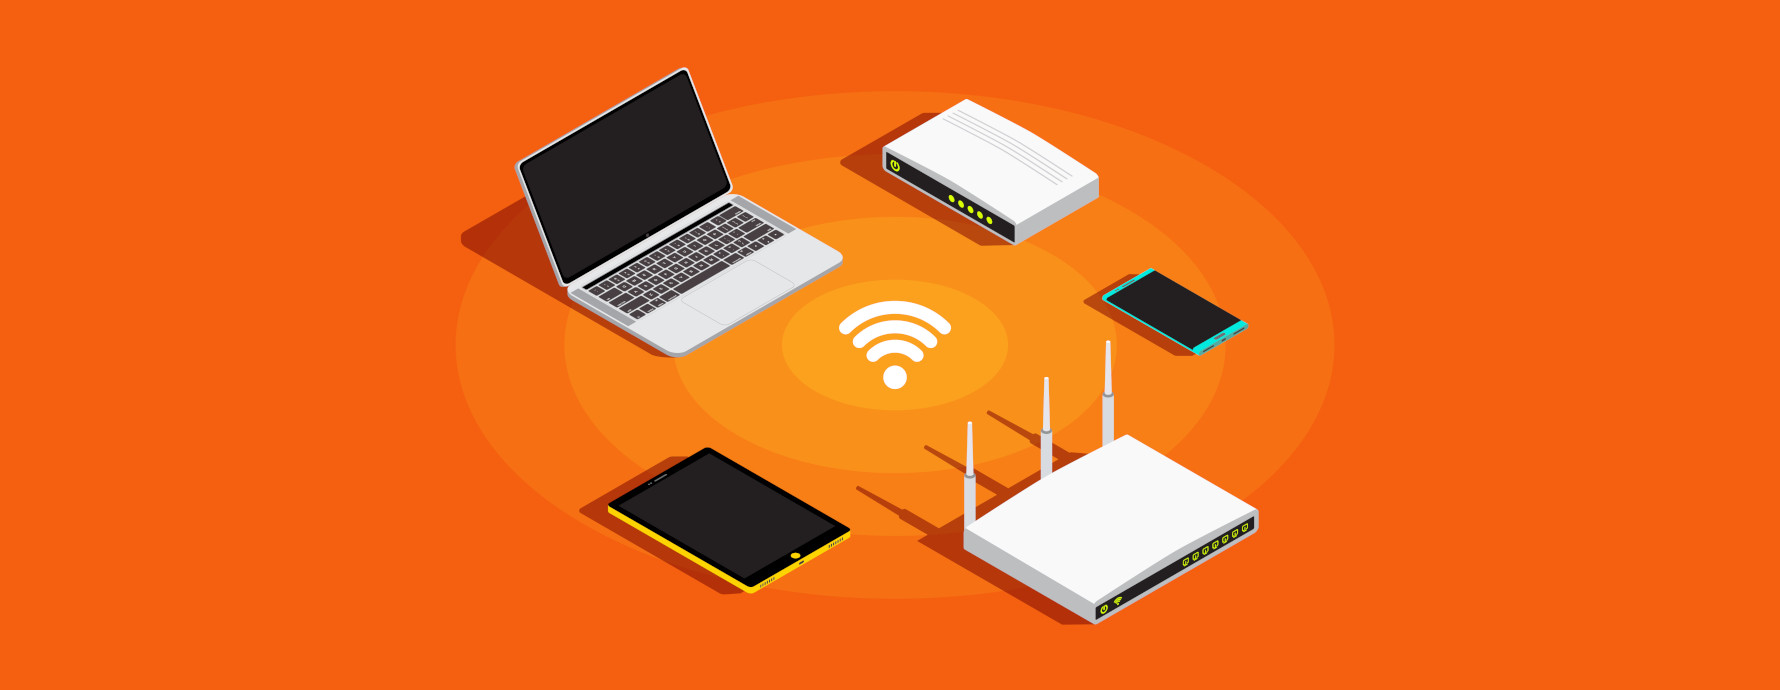 Verschillende apparaten verbonden met wifi